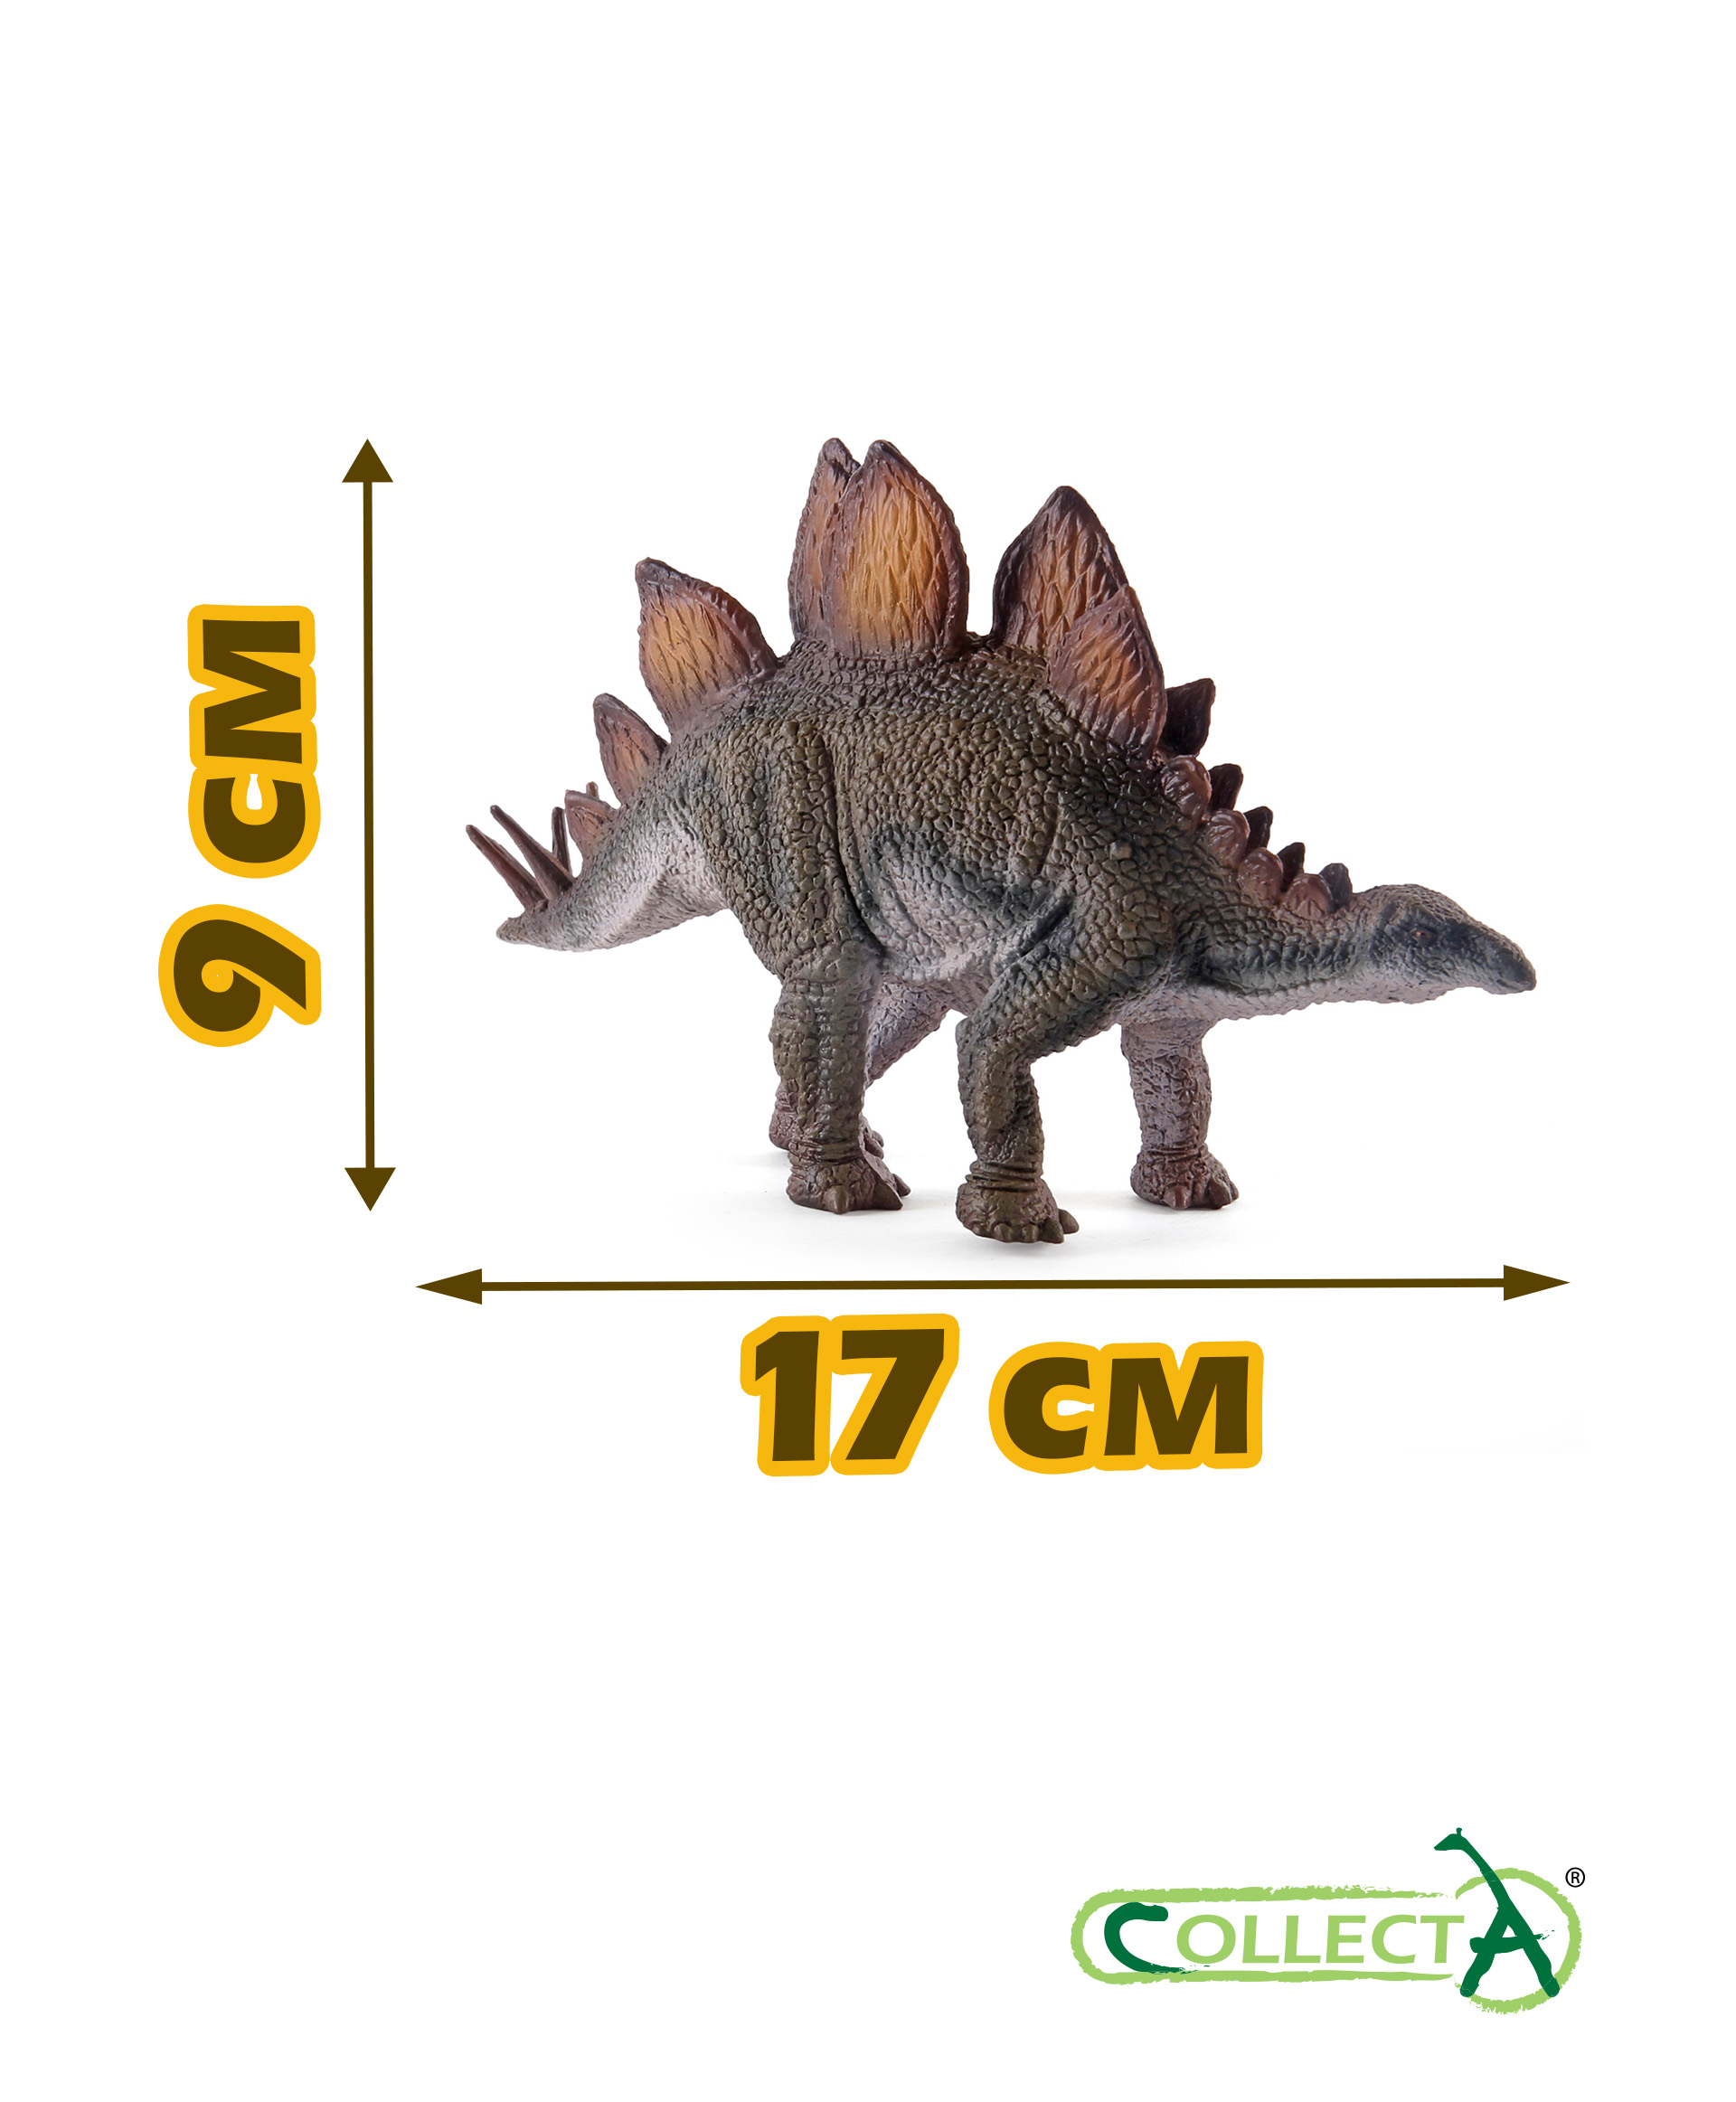 Фигурка динозавра Collecta Стегозавр - фото 2